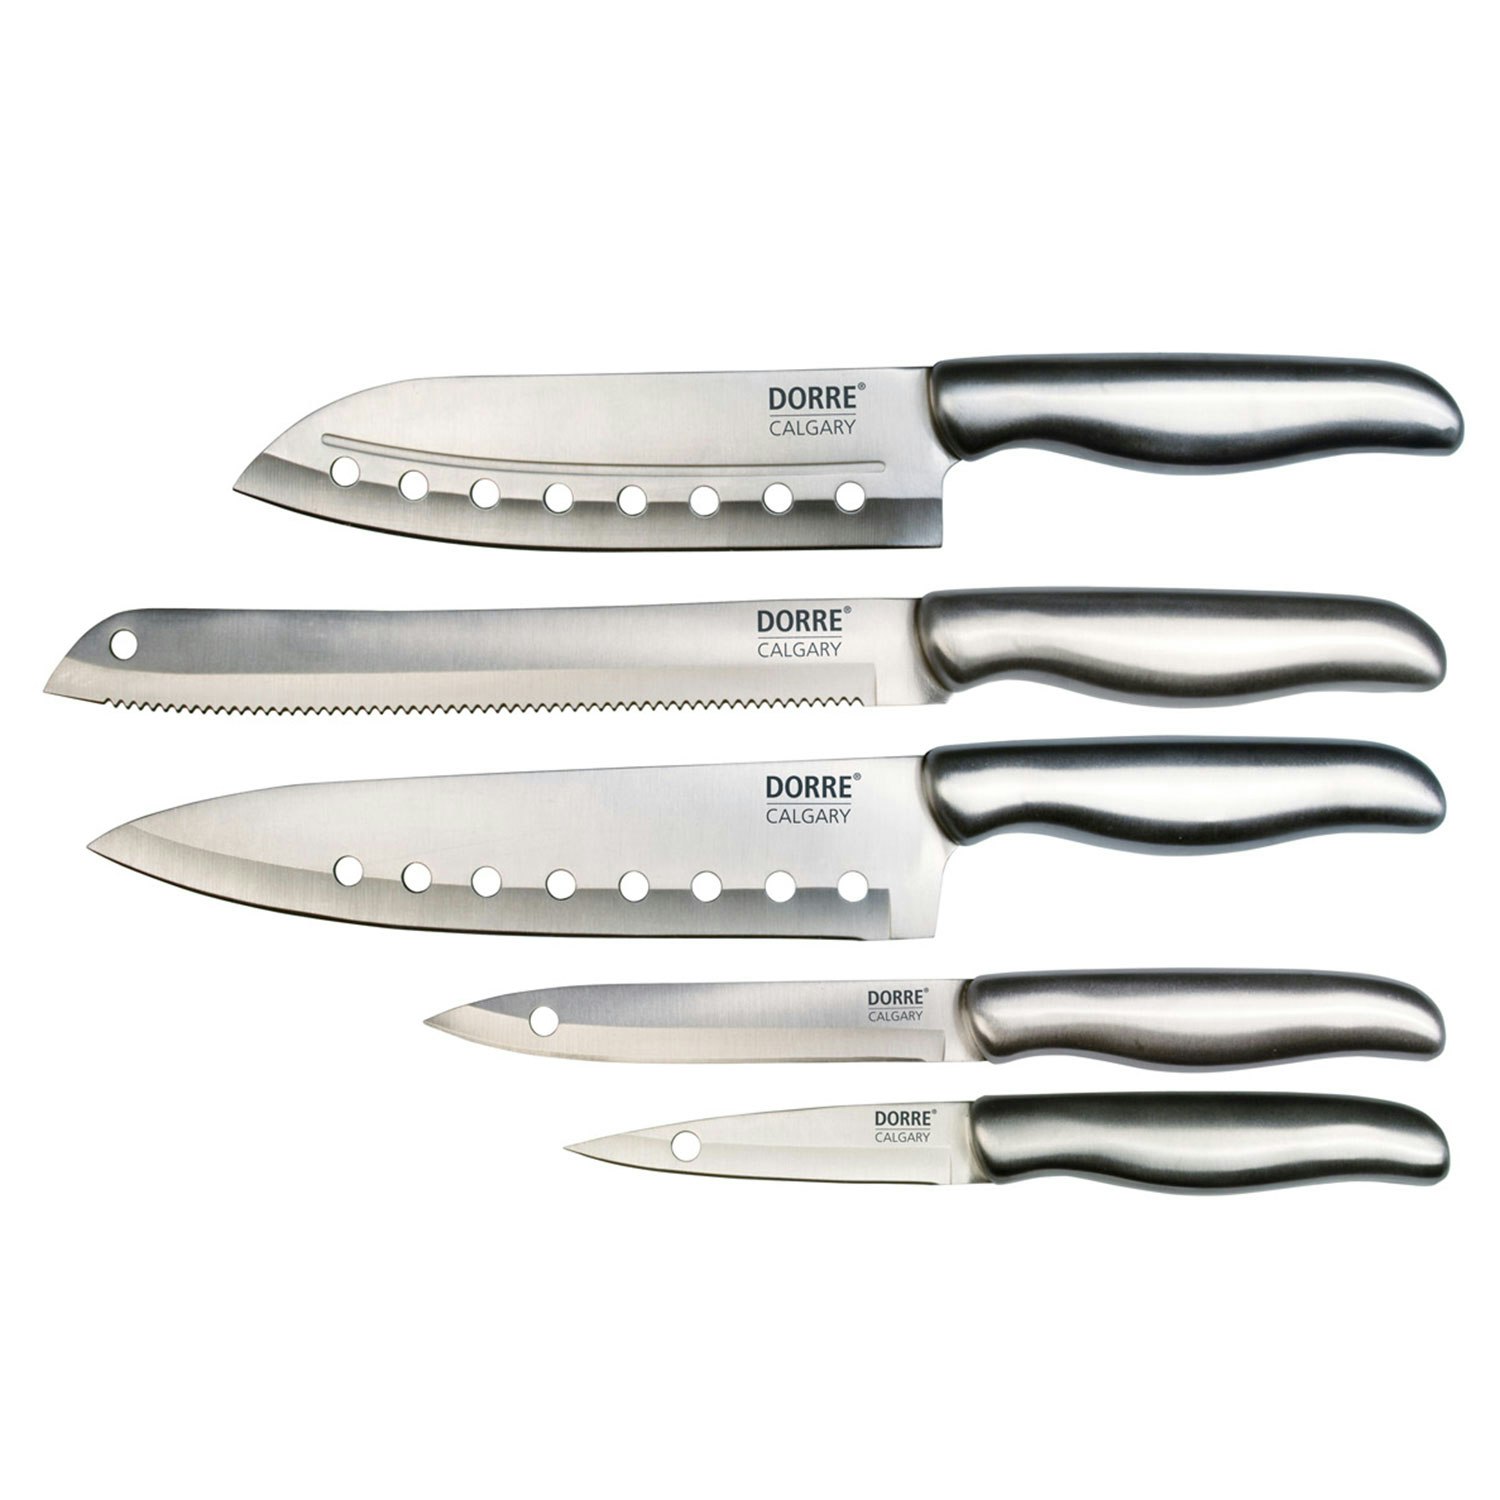 Steak knives CLASSIC COLOUR, set of 4, 12 cm, velvet oyster, Wüsthof 